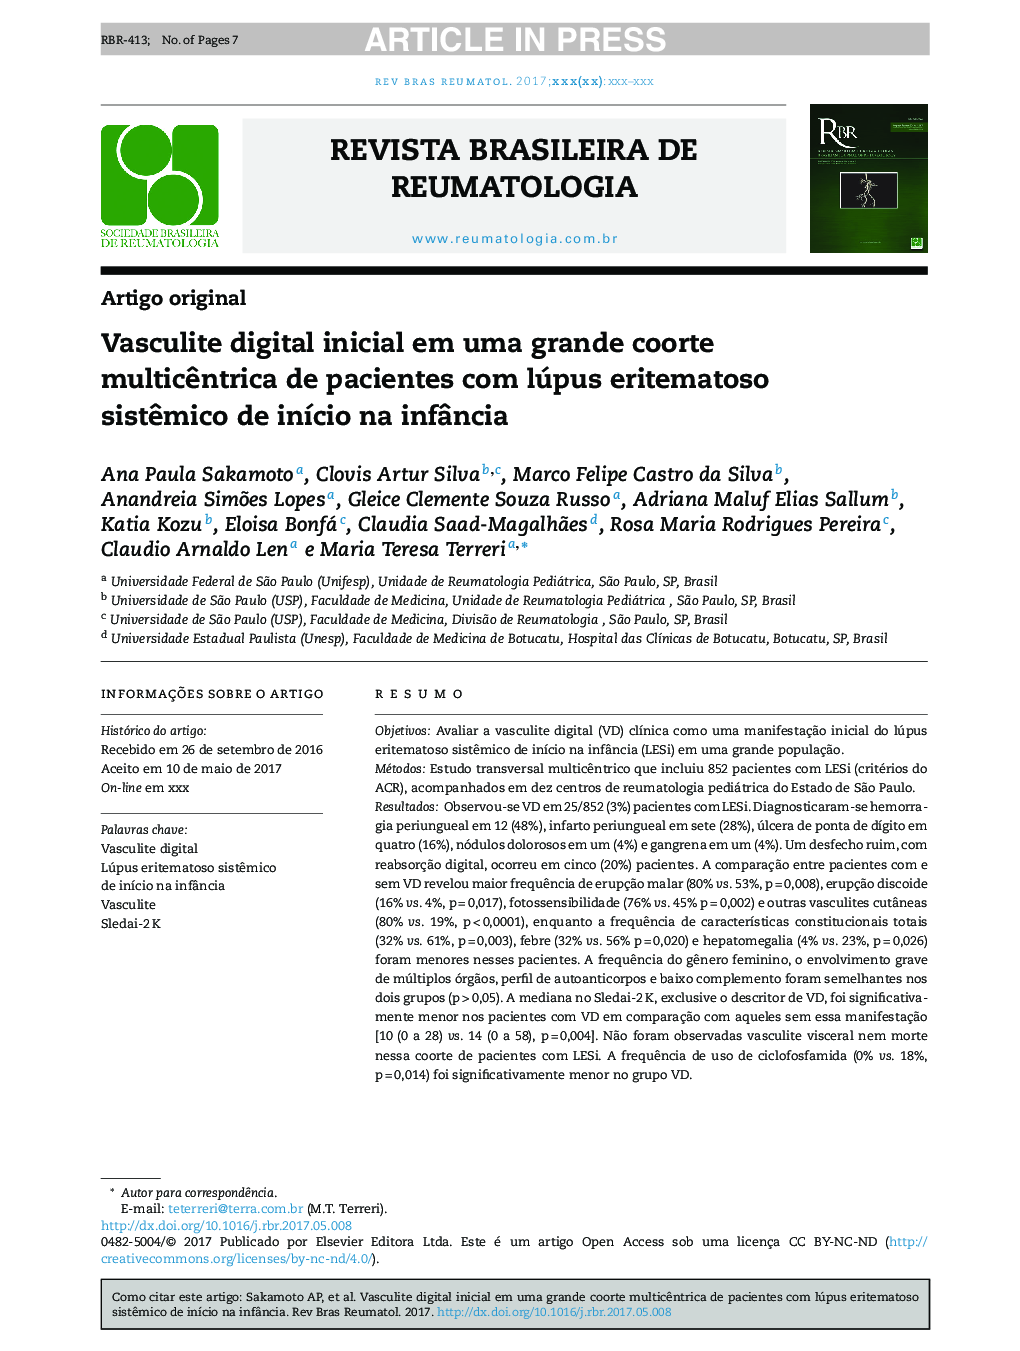 Vasculite digital inicial em uma grande coorte multicÃªntrica de pacientes com lúpus eritematoso sistÃªmico de inÃ­cio na infÃ¢ncia